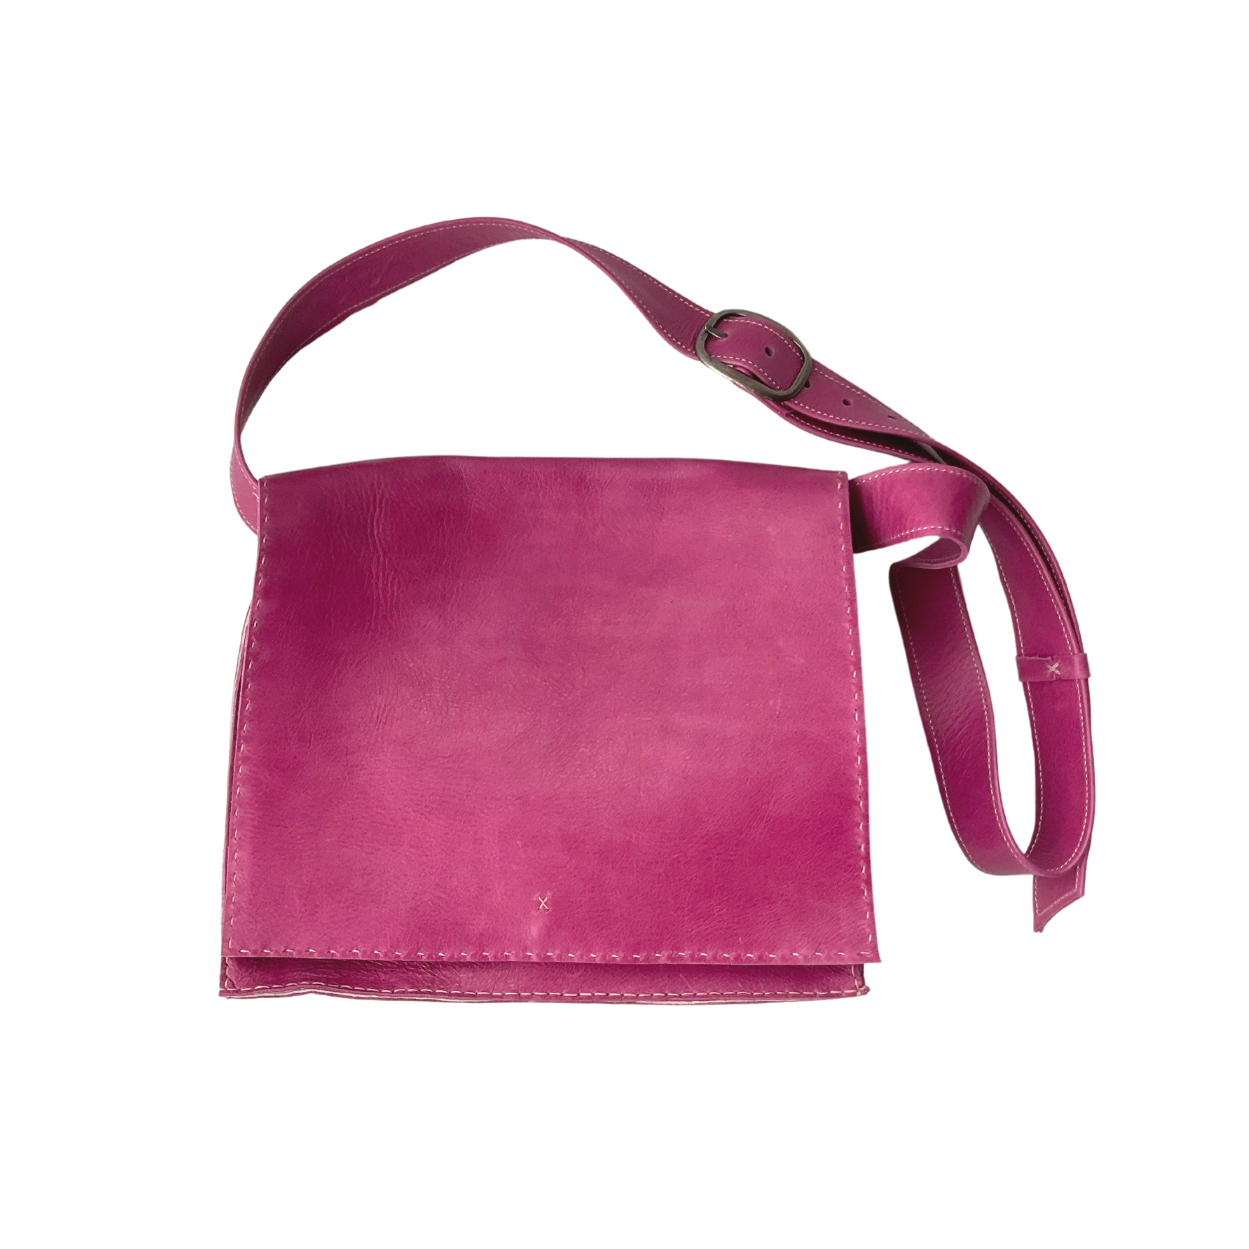 Messenger Bag, Hot Pink